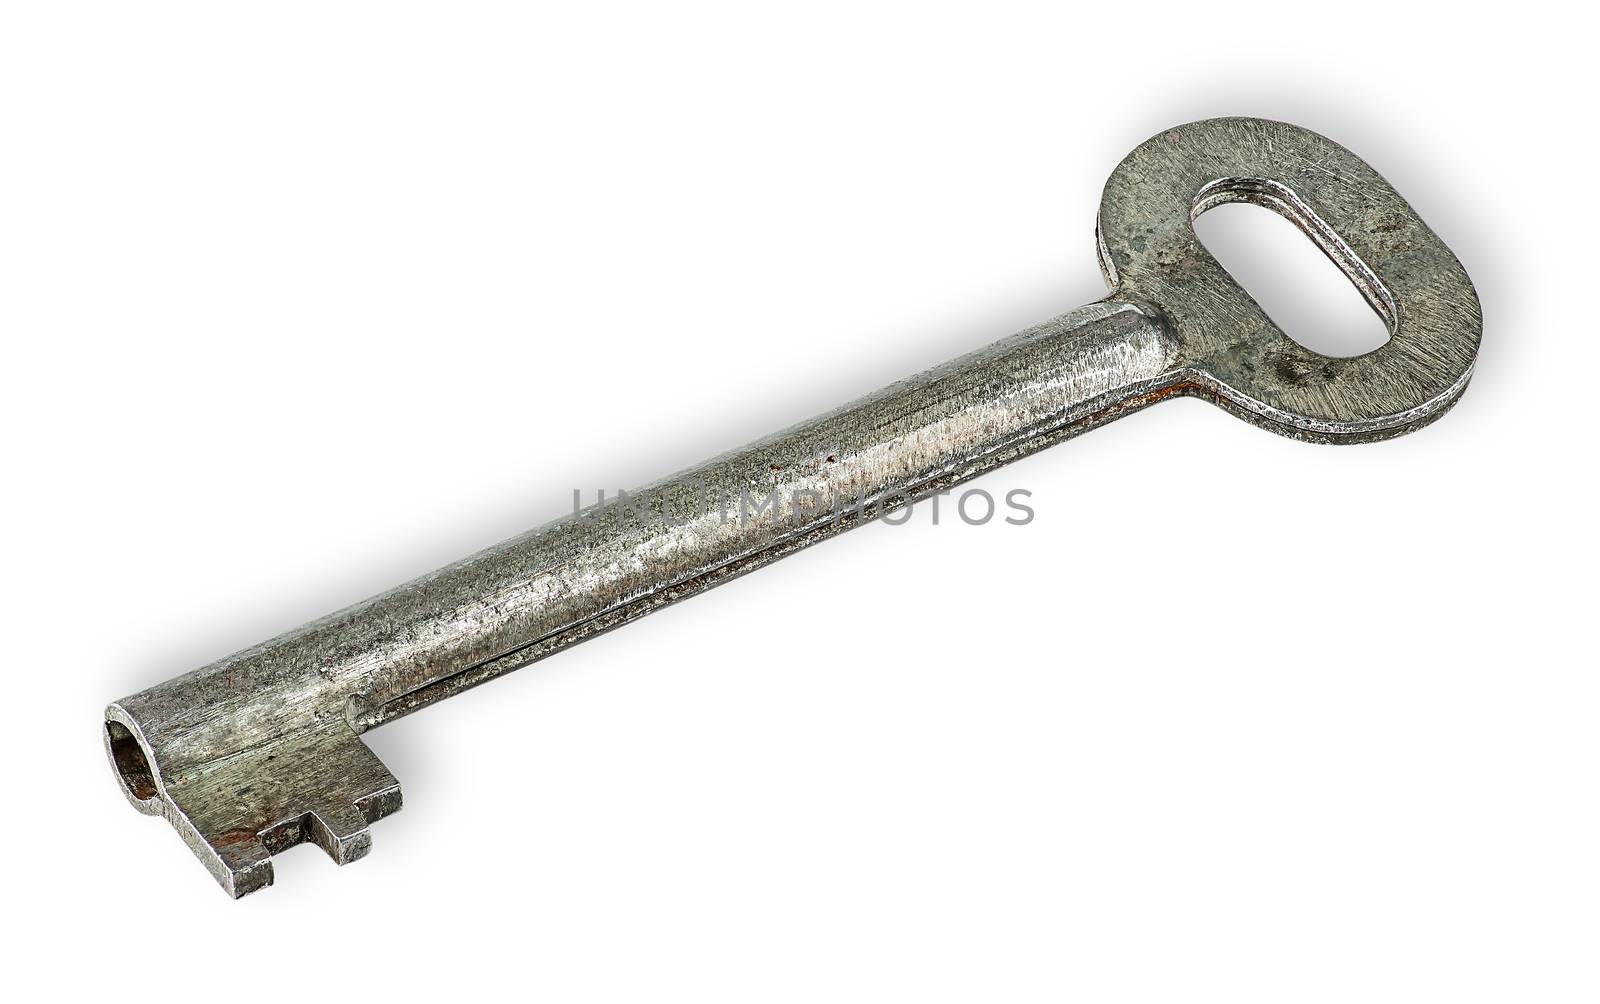 Old rusty big key by Cipariss